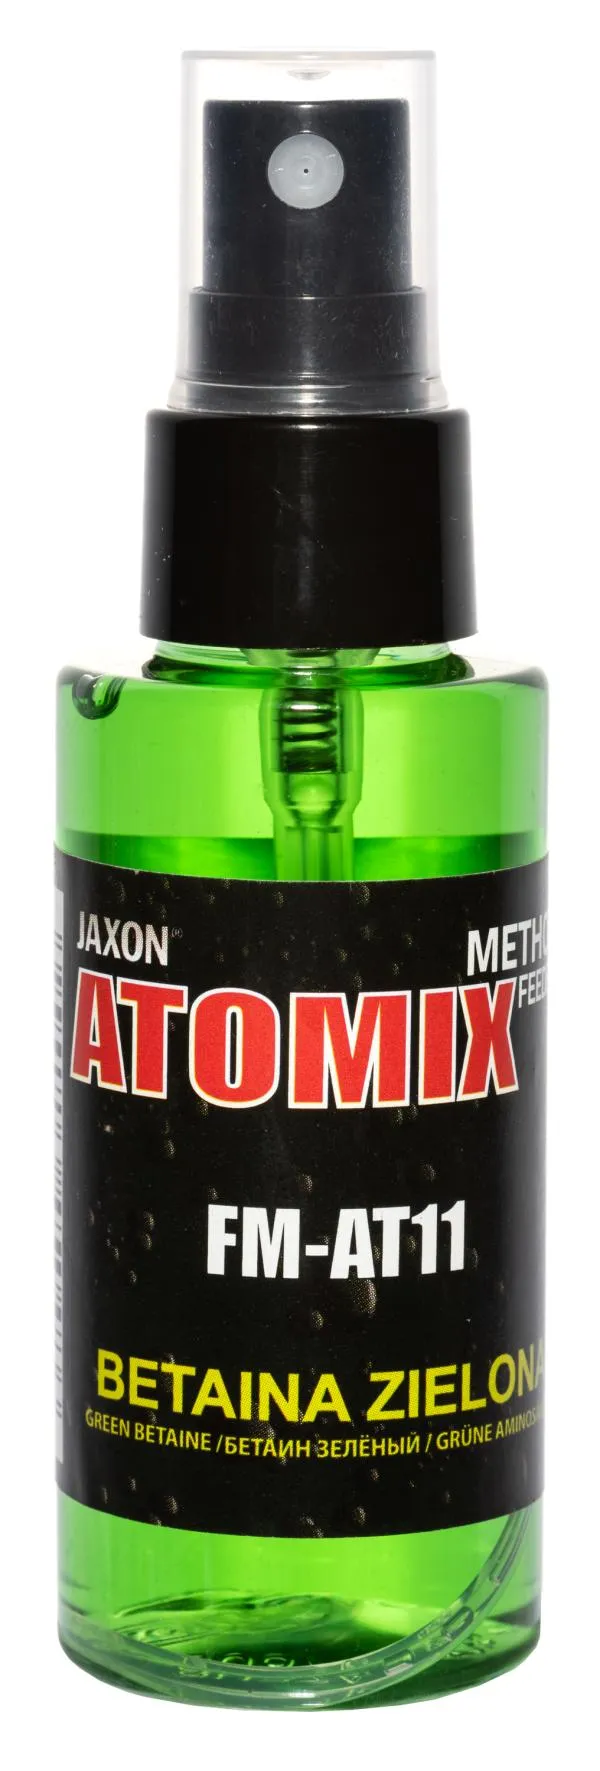 NextFish - Horgász webshop és horgászbolt - JAXON ATOMIX - GREEN BETAINE 50g aroma